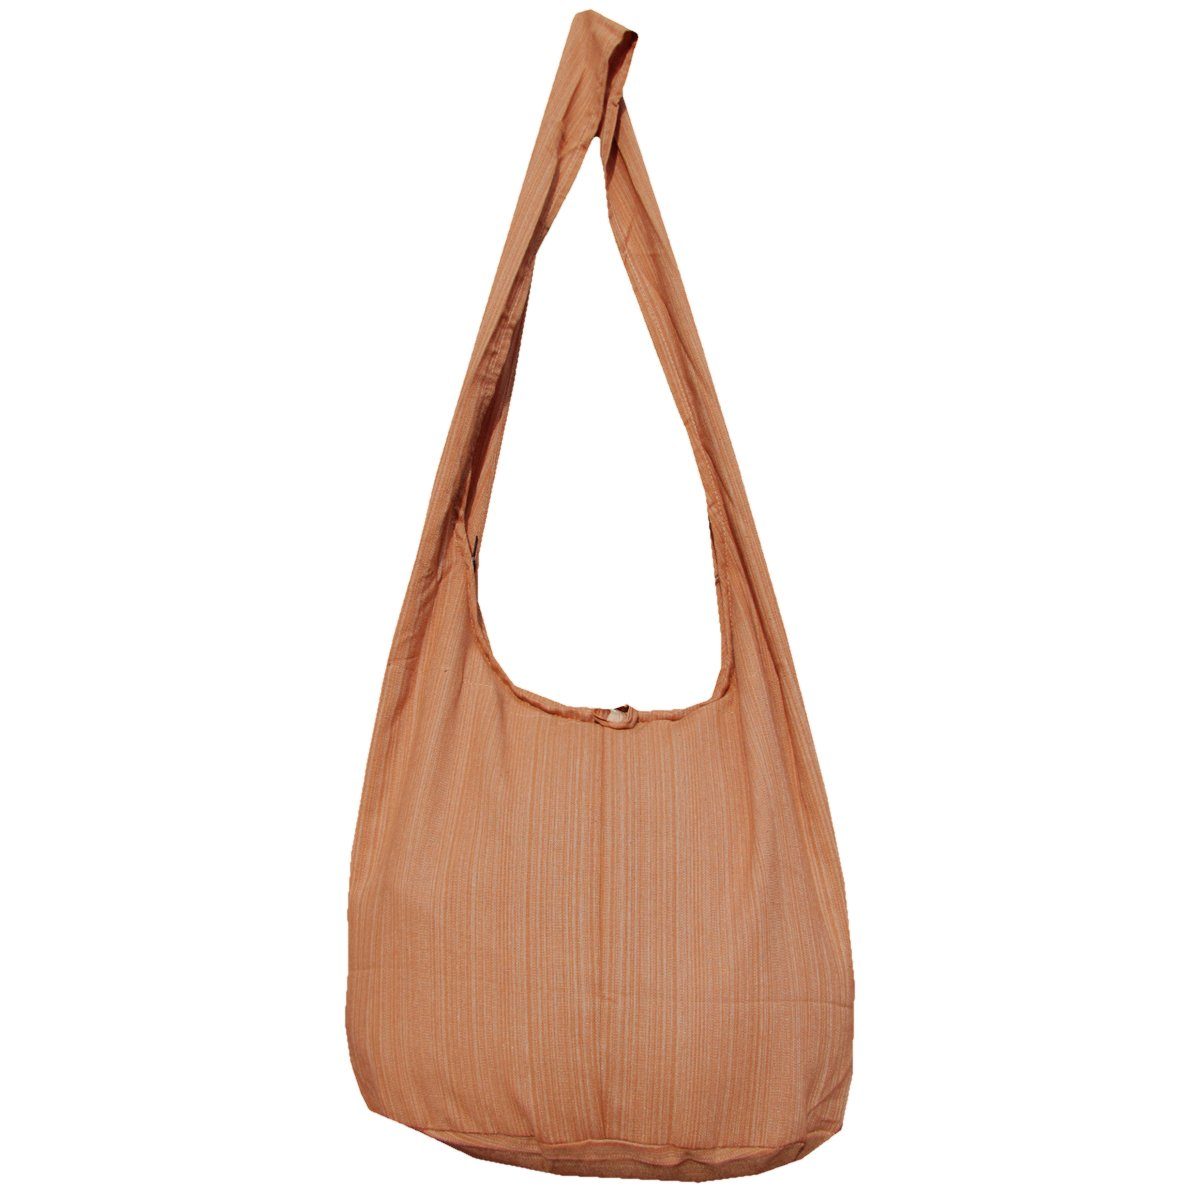 PANASIAM Wickeltasche Schulterbeutel Lini Beuteltasche aus 100% Baumwolle Schultertasche, In 2 Größen auch als Strandtasche Yogatasche oder Handtasche nutzbar hellbraun | Canvas-Taschen